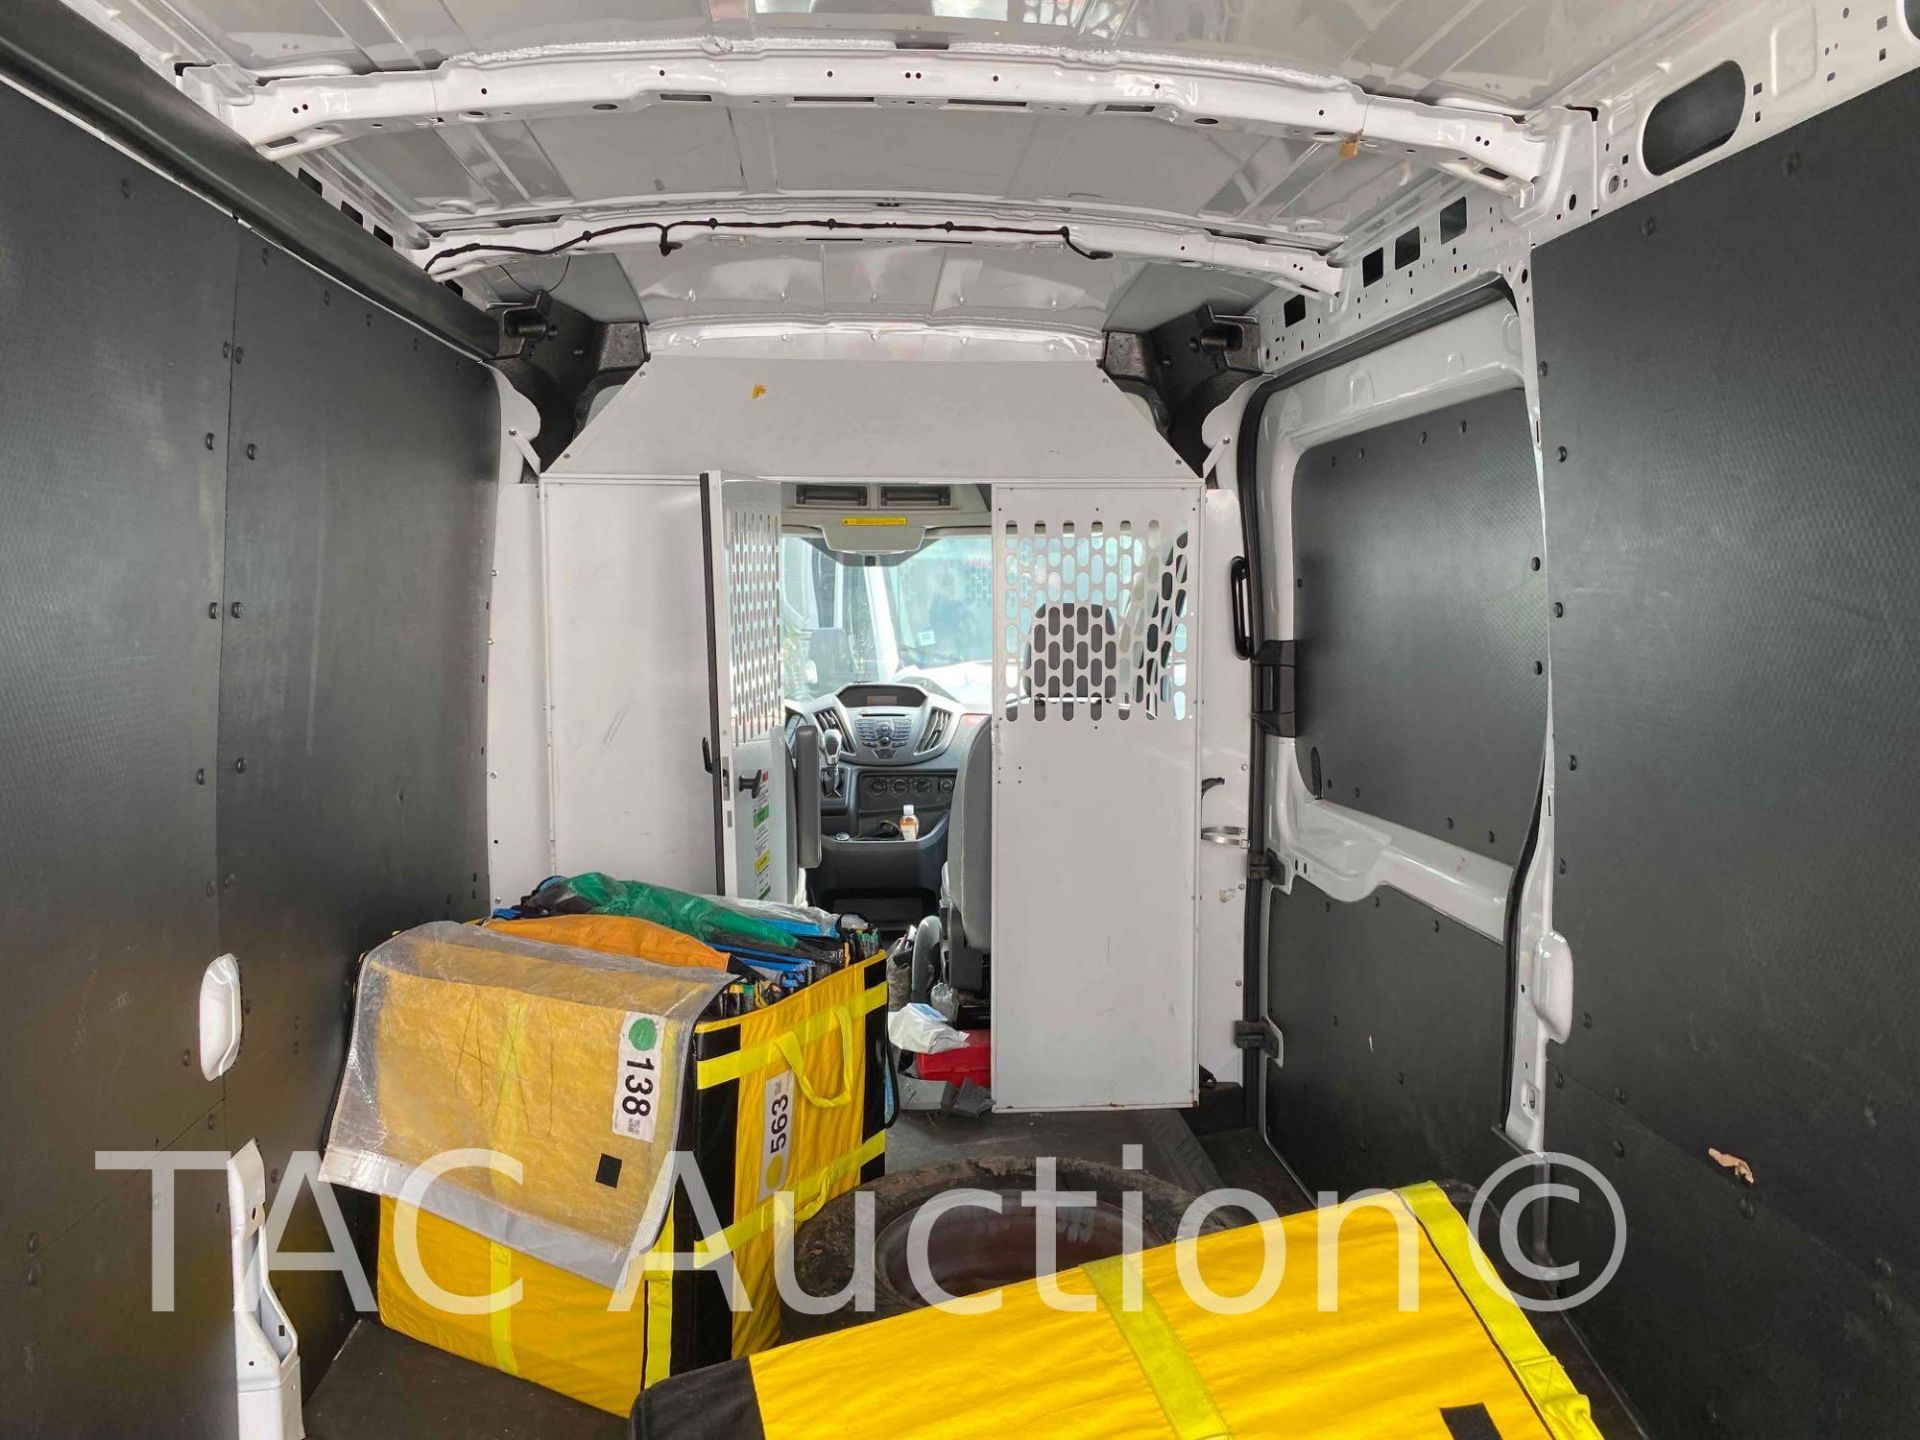 2019 Ford Transit 150 Cargo Van - Image 11 of 44